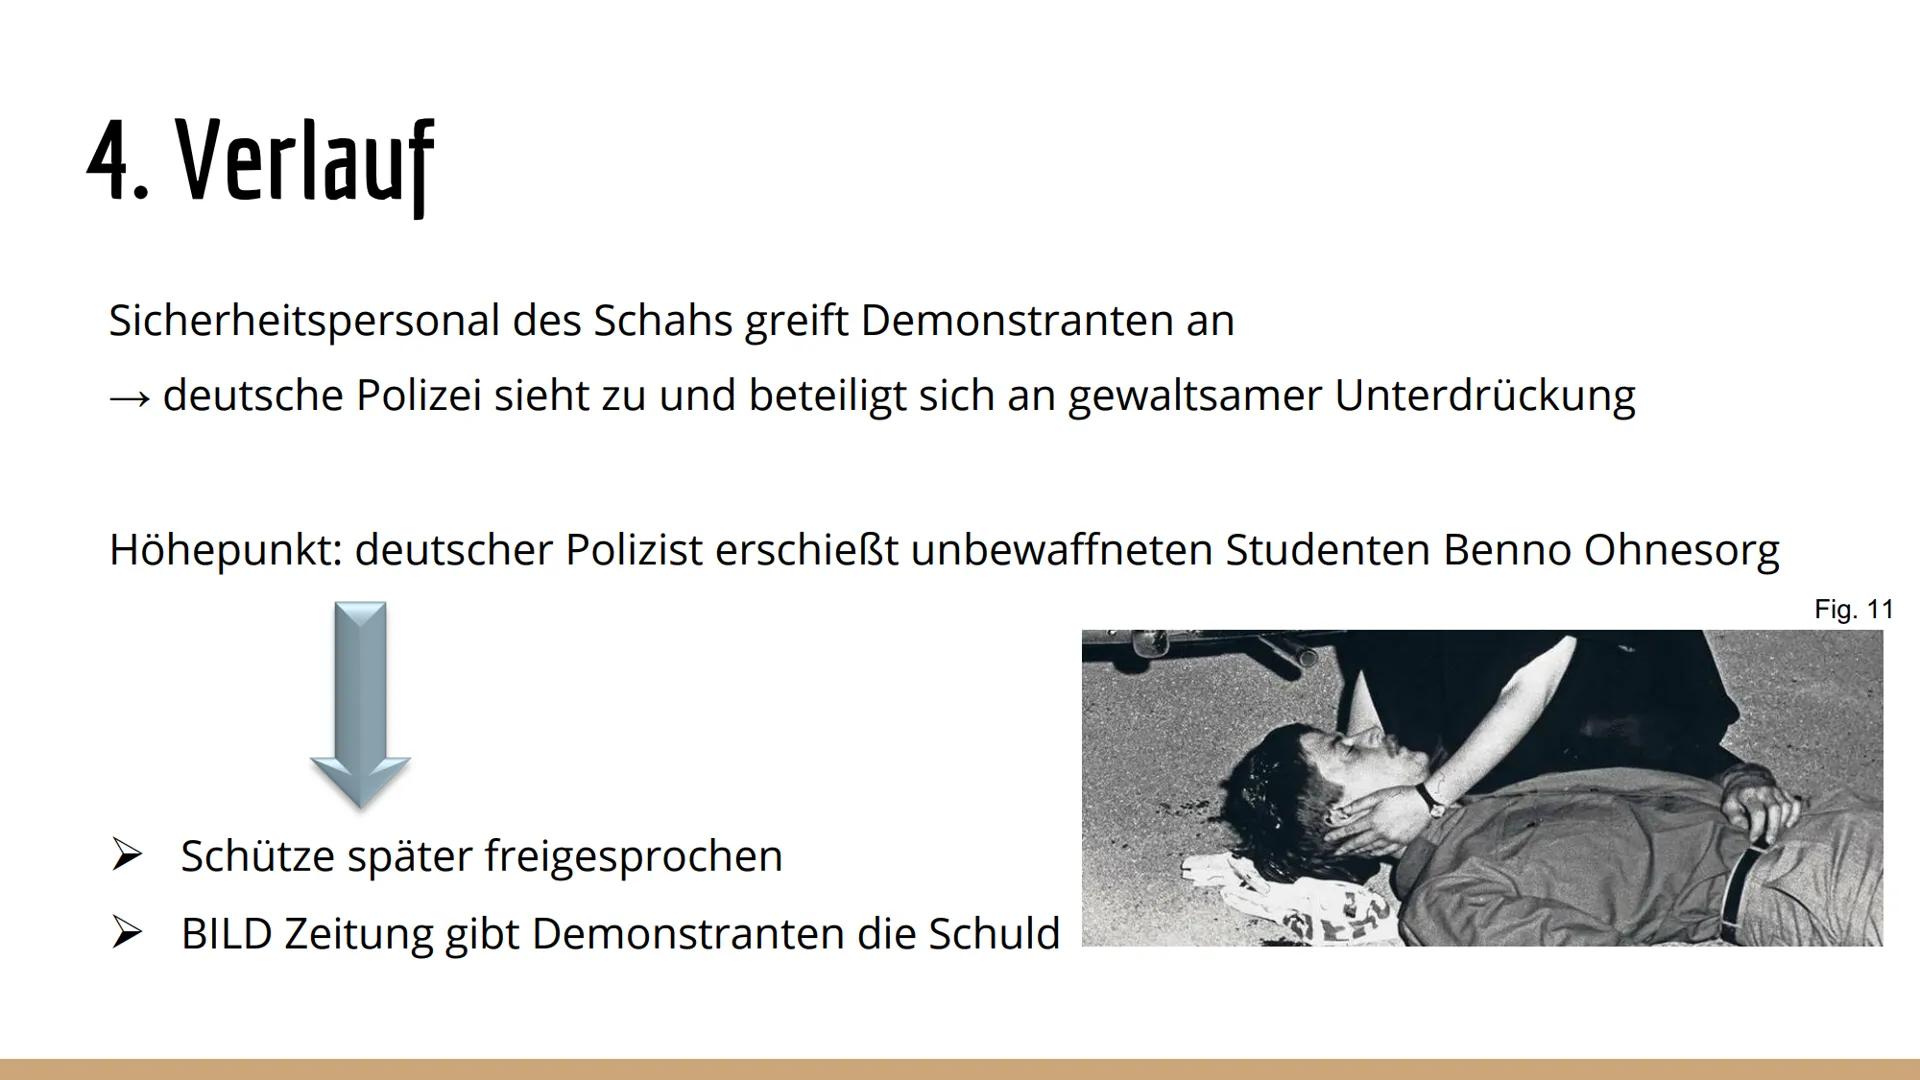 7. Februar 2019
..., K2
Geschichte
Herr ...
1. Was ist die 68er Bewegung?
Deutsche Studentenbewegung Ende der 60er Jahre → Wortführer: Rudi 